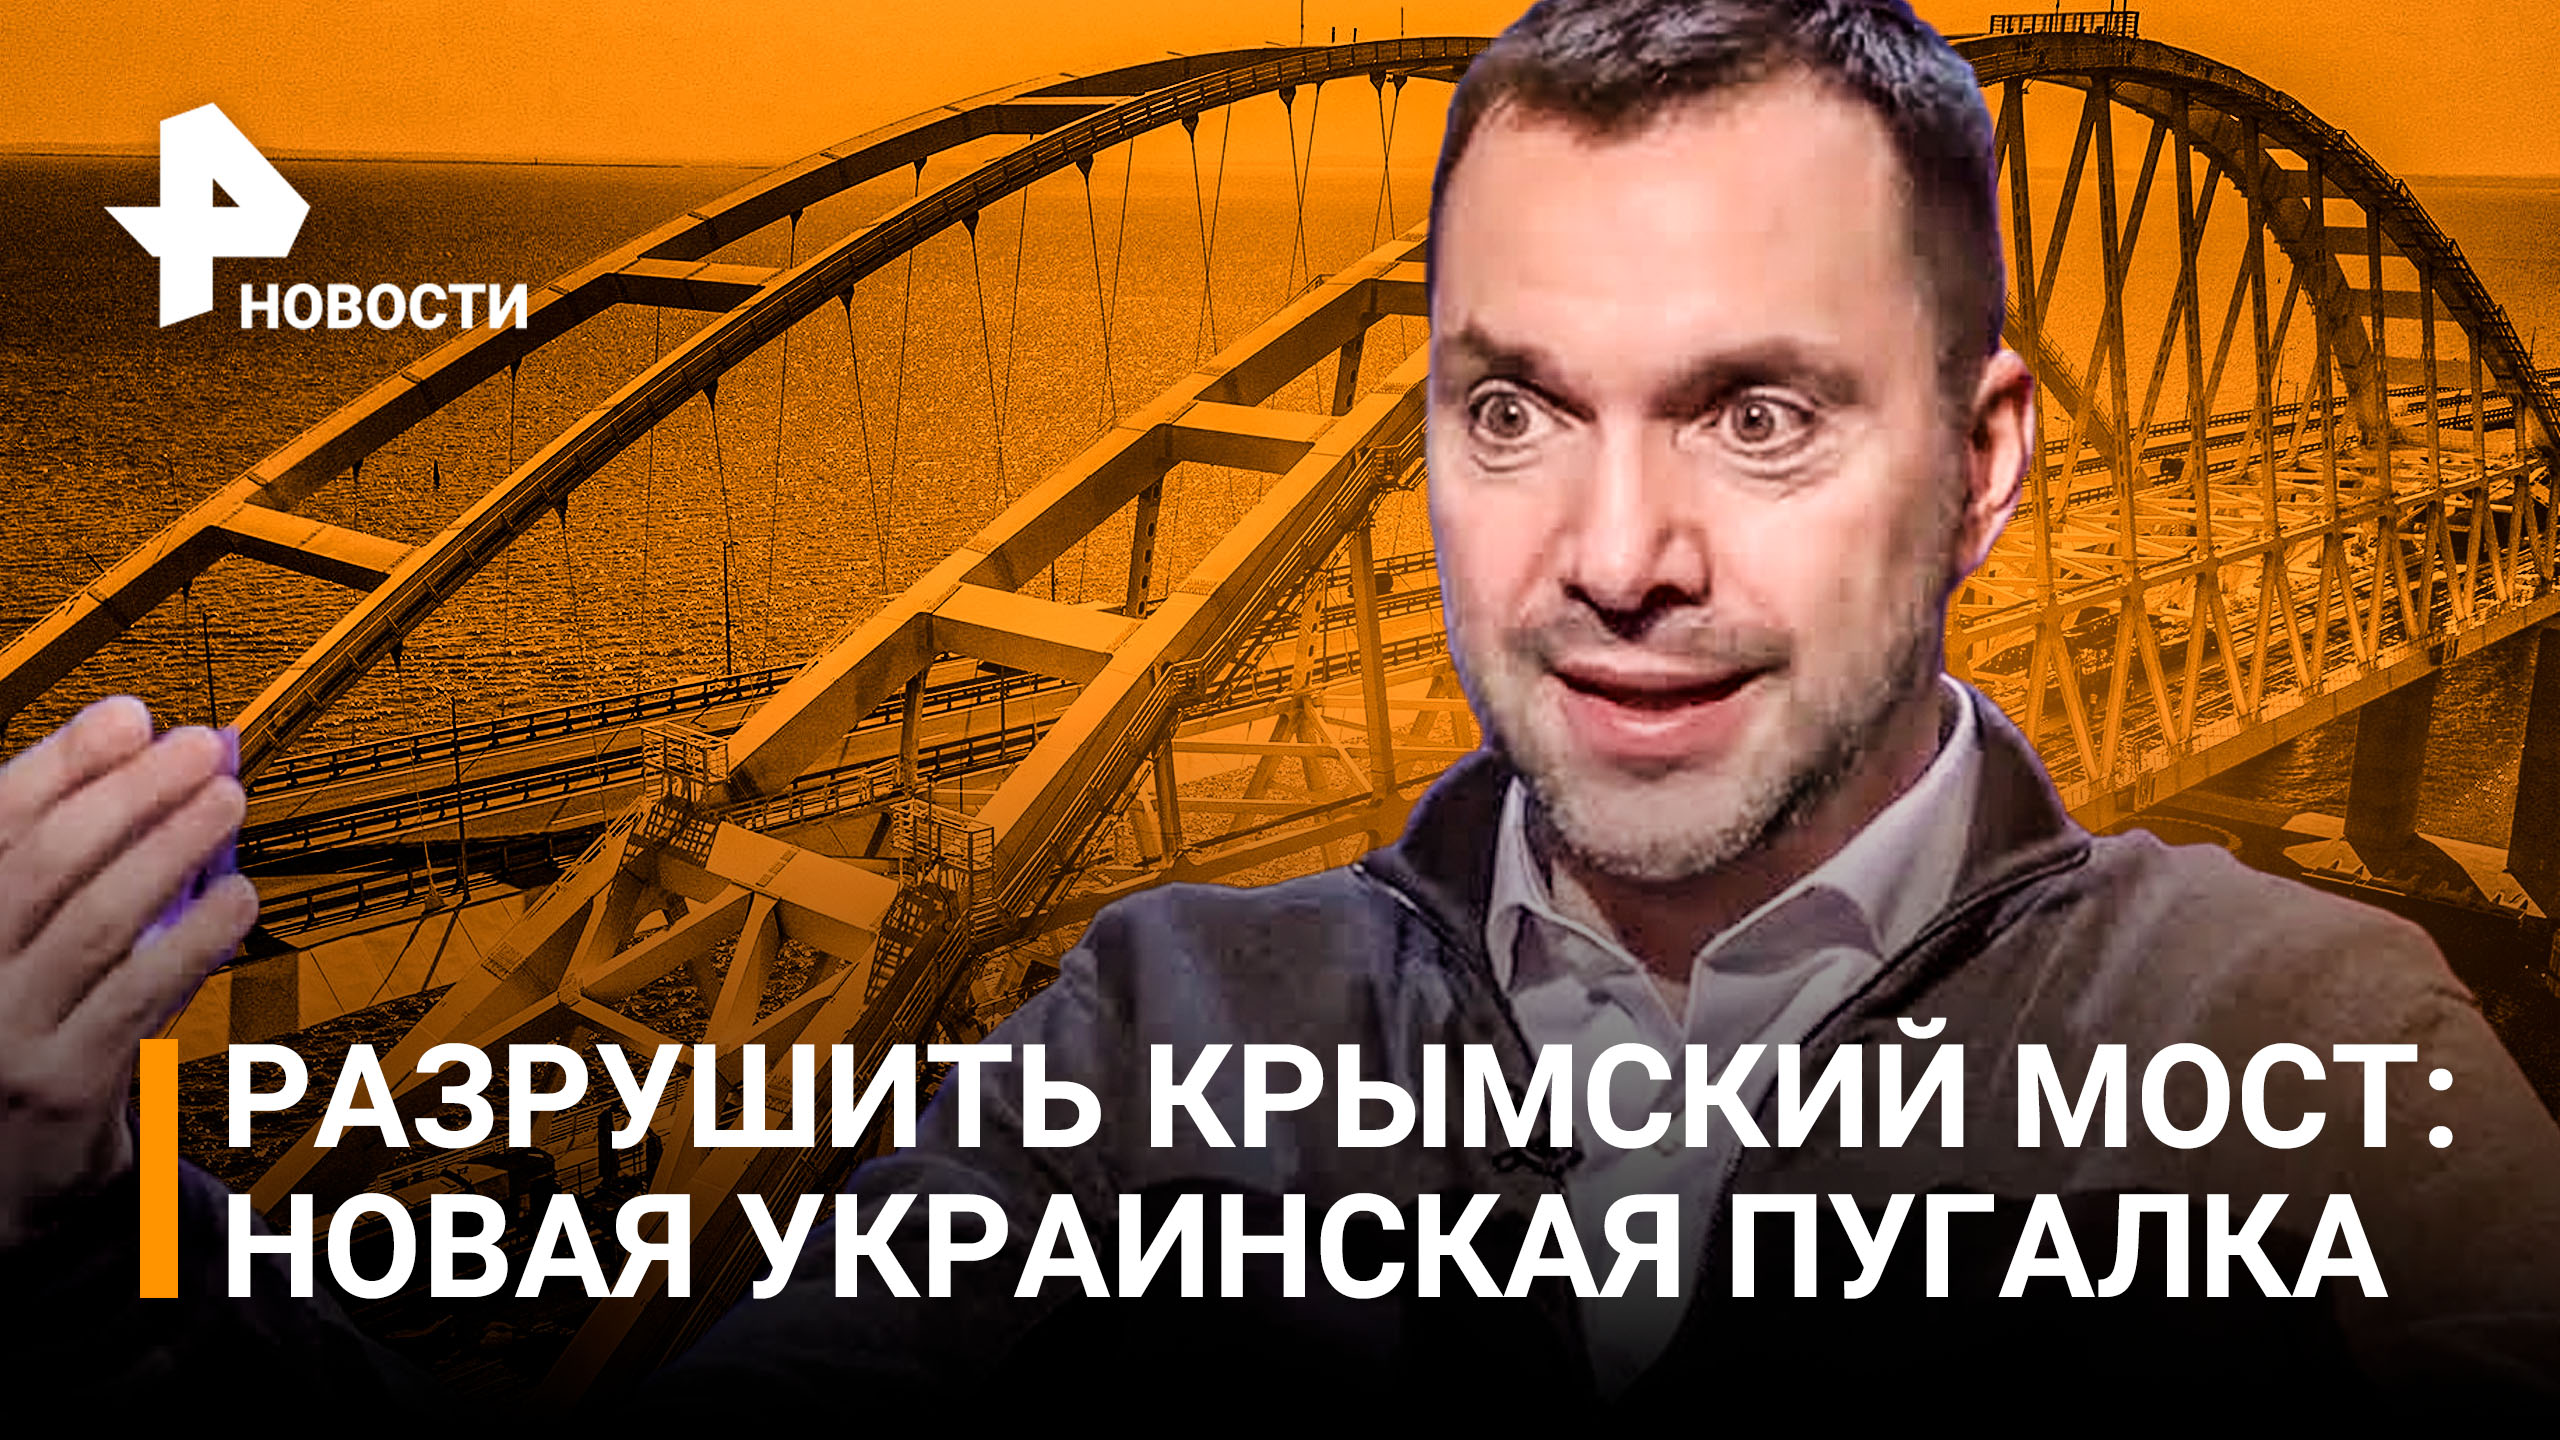 Киев сговорился с Лондоном разрушить Крымский мост: новая украинская пугалка / РЕН Новости